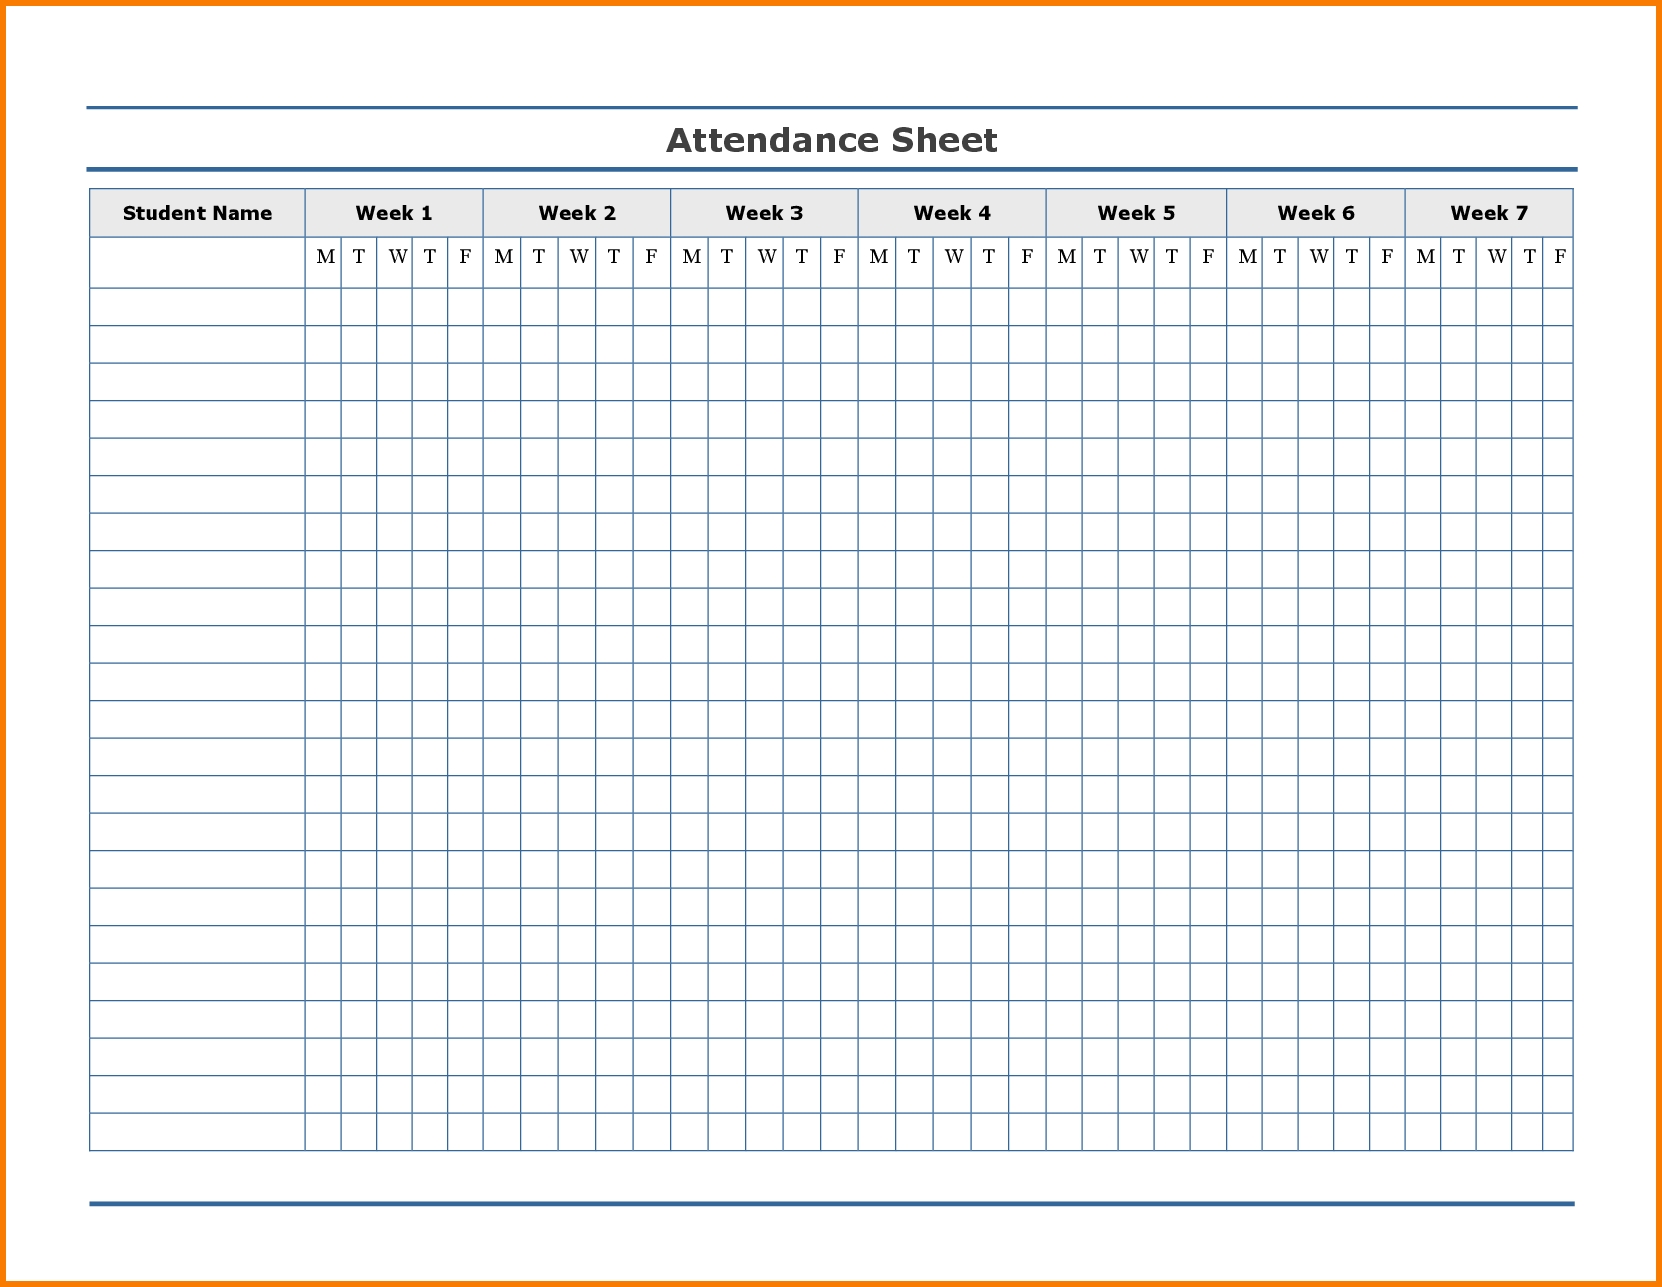 Printable Attendance Tracker | Attendance Chart, Attendance  Free Attendance Sheet Pdf 2021